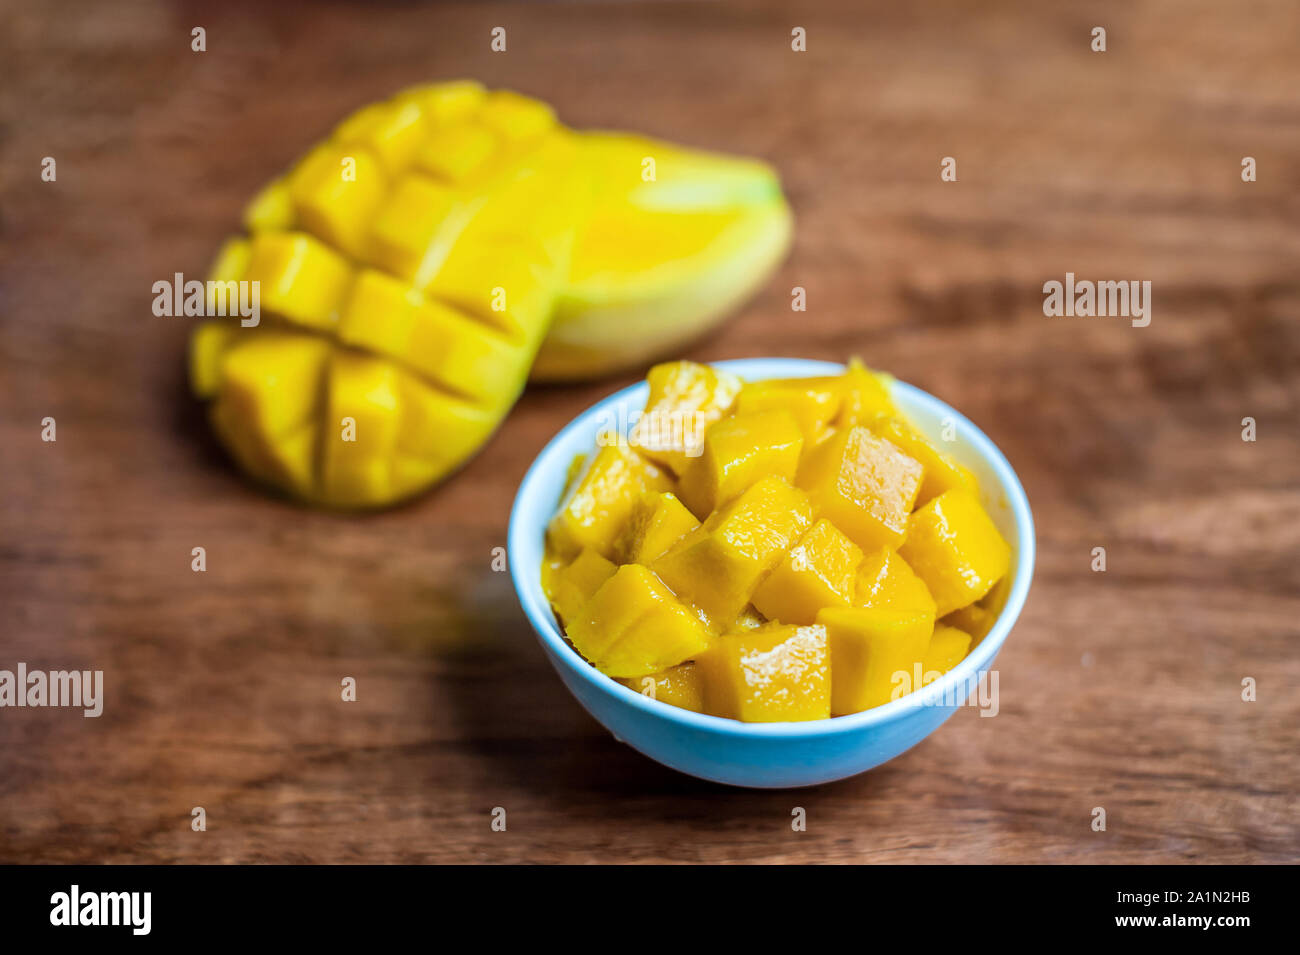 Schale mit gesunder frischer Mango Stockfotografie - Alamy